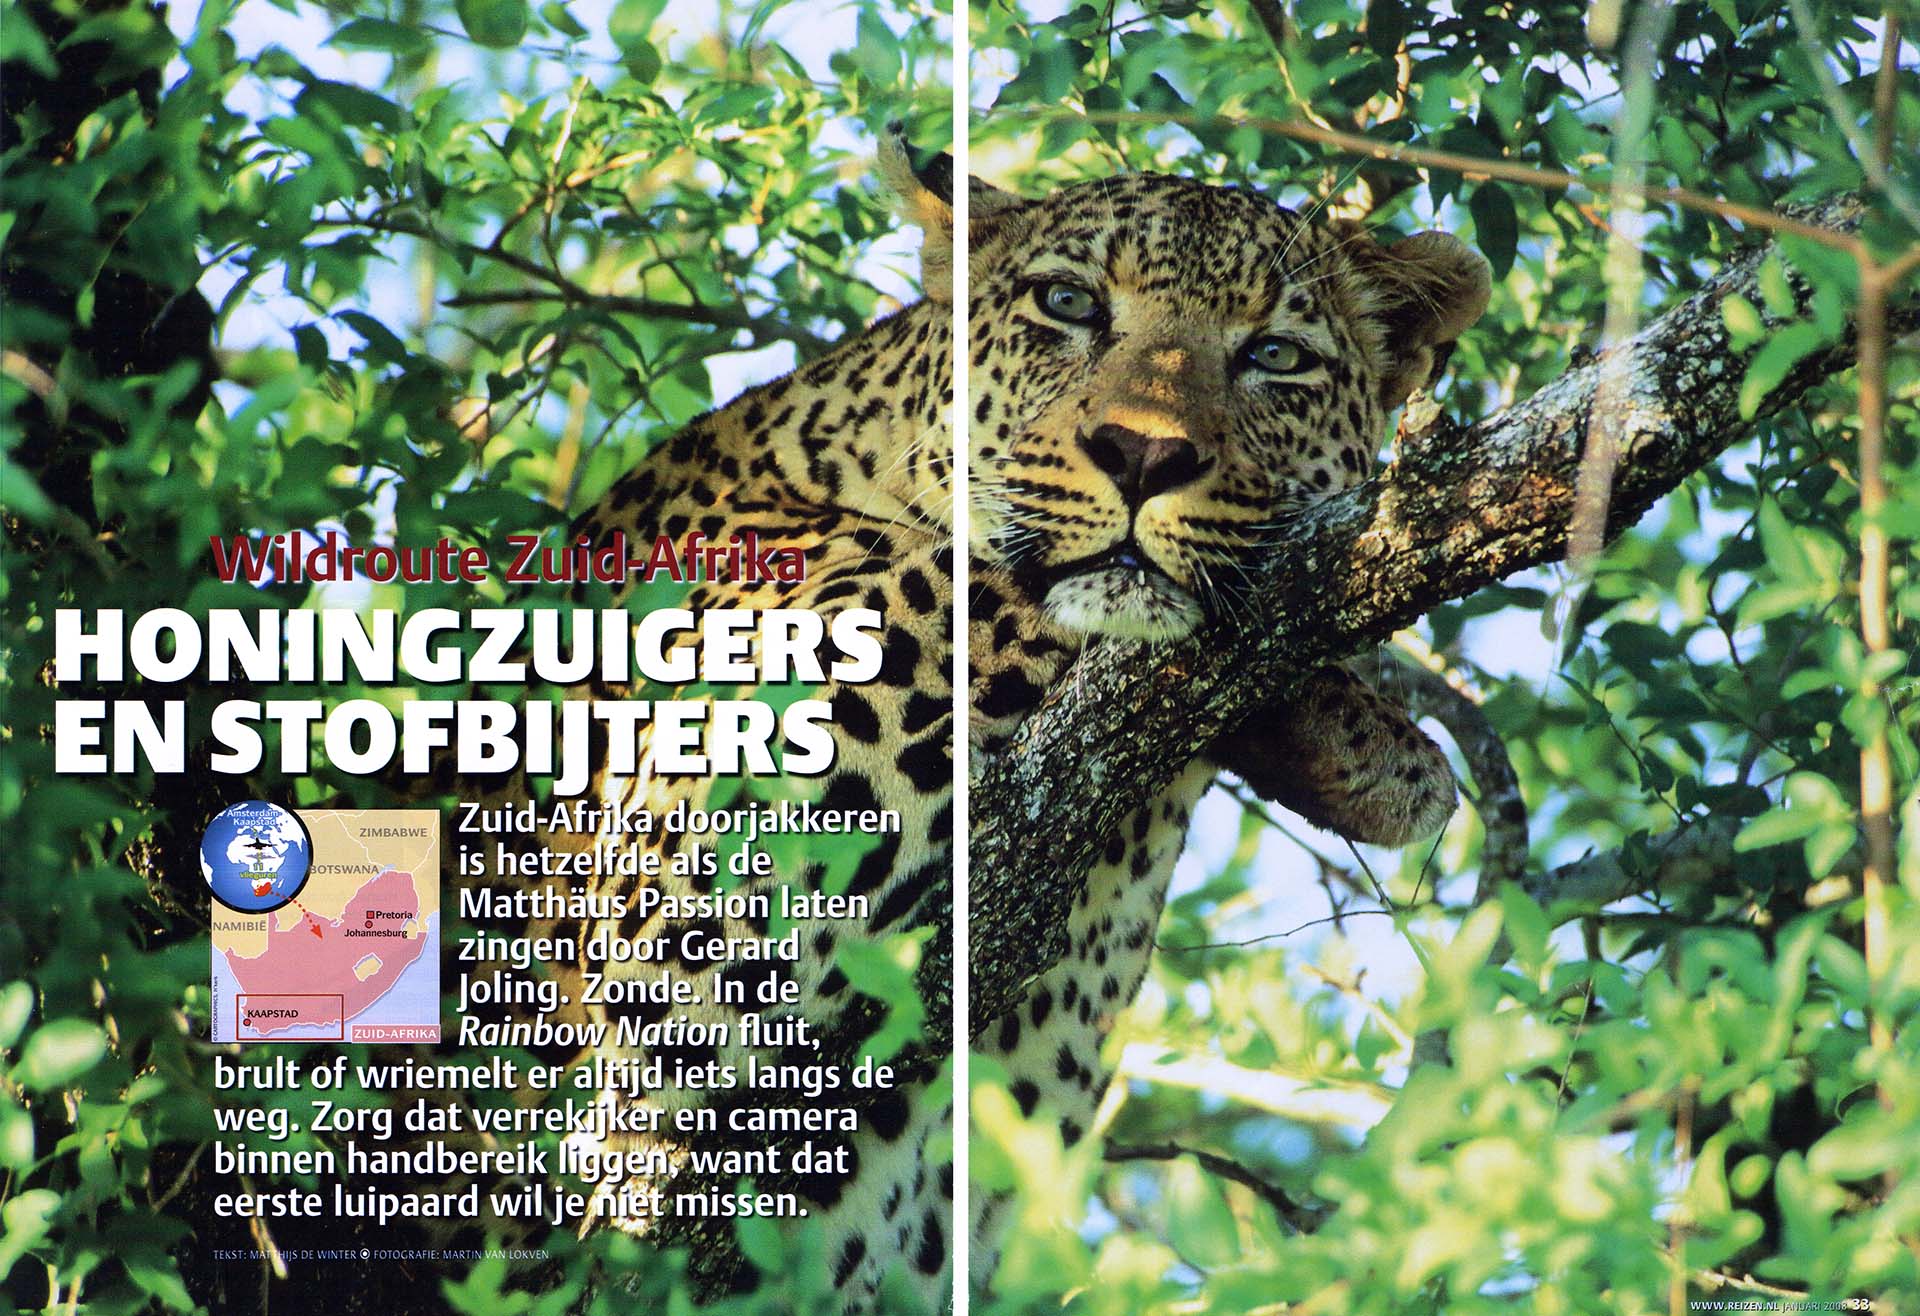 Publicatie van een foto van een luipaard in een boom, in artikel over wild Zuid-Afrika.